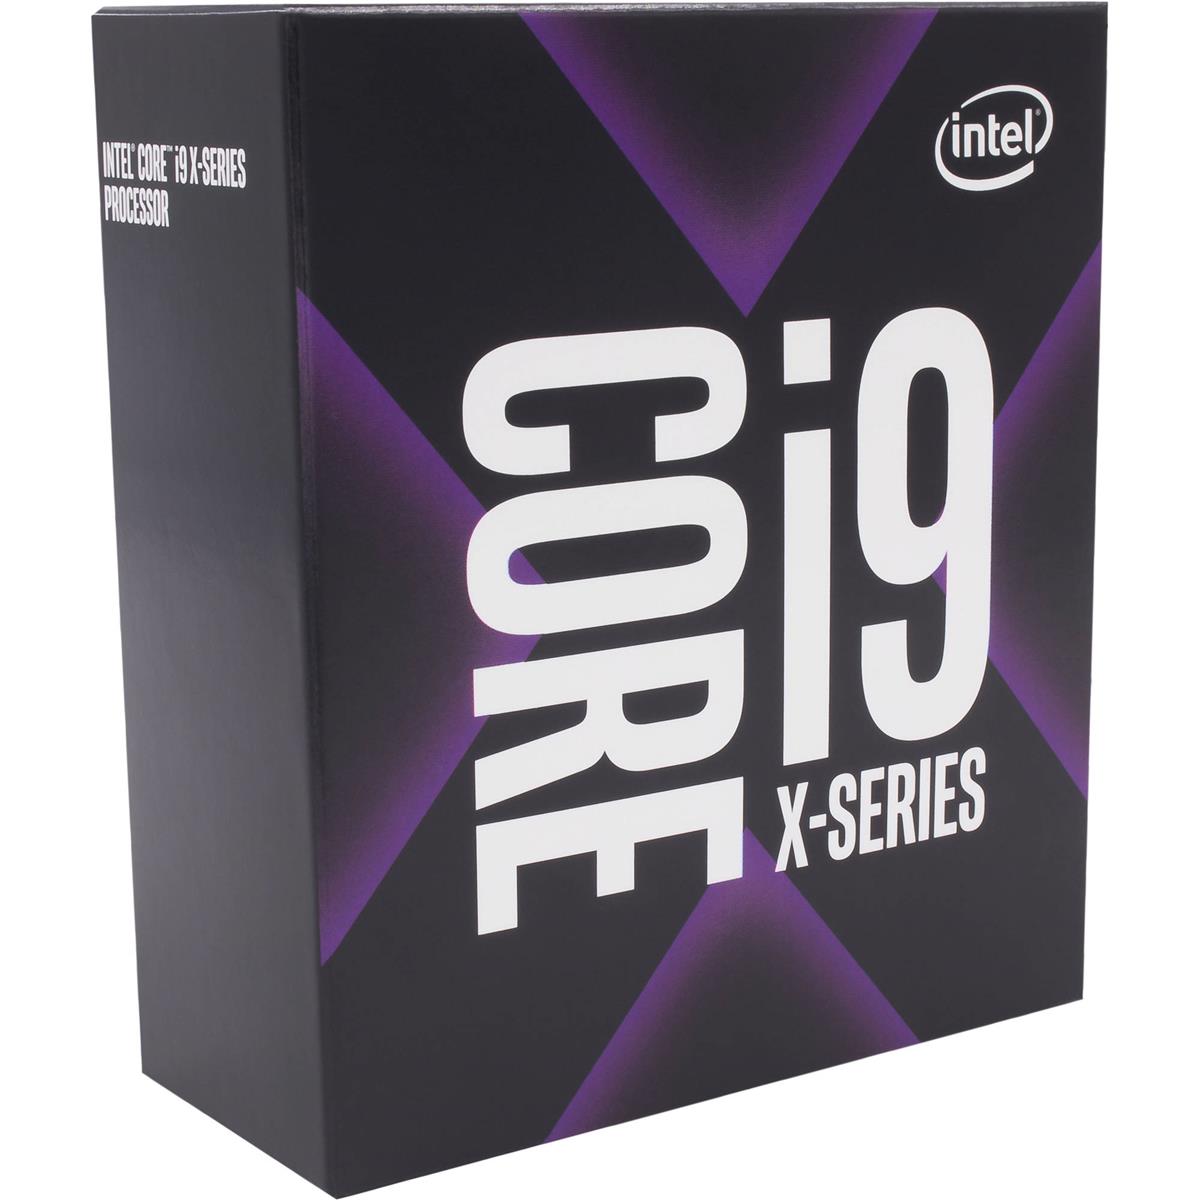 

Intel Core i9-10920X 3.5GHz 12-Cores Unlocked Desktop Processor, LGA 2066 Socket